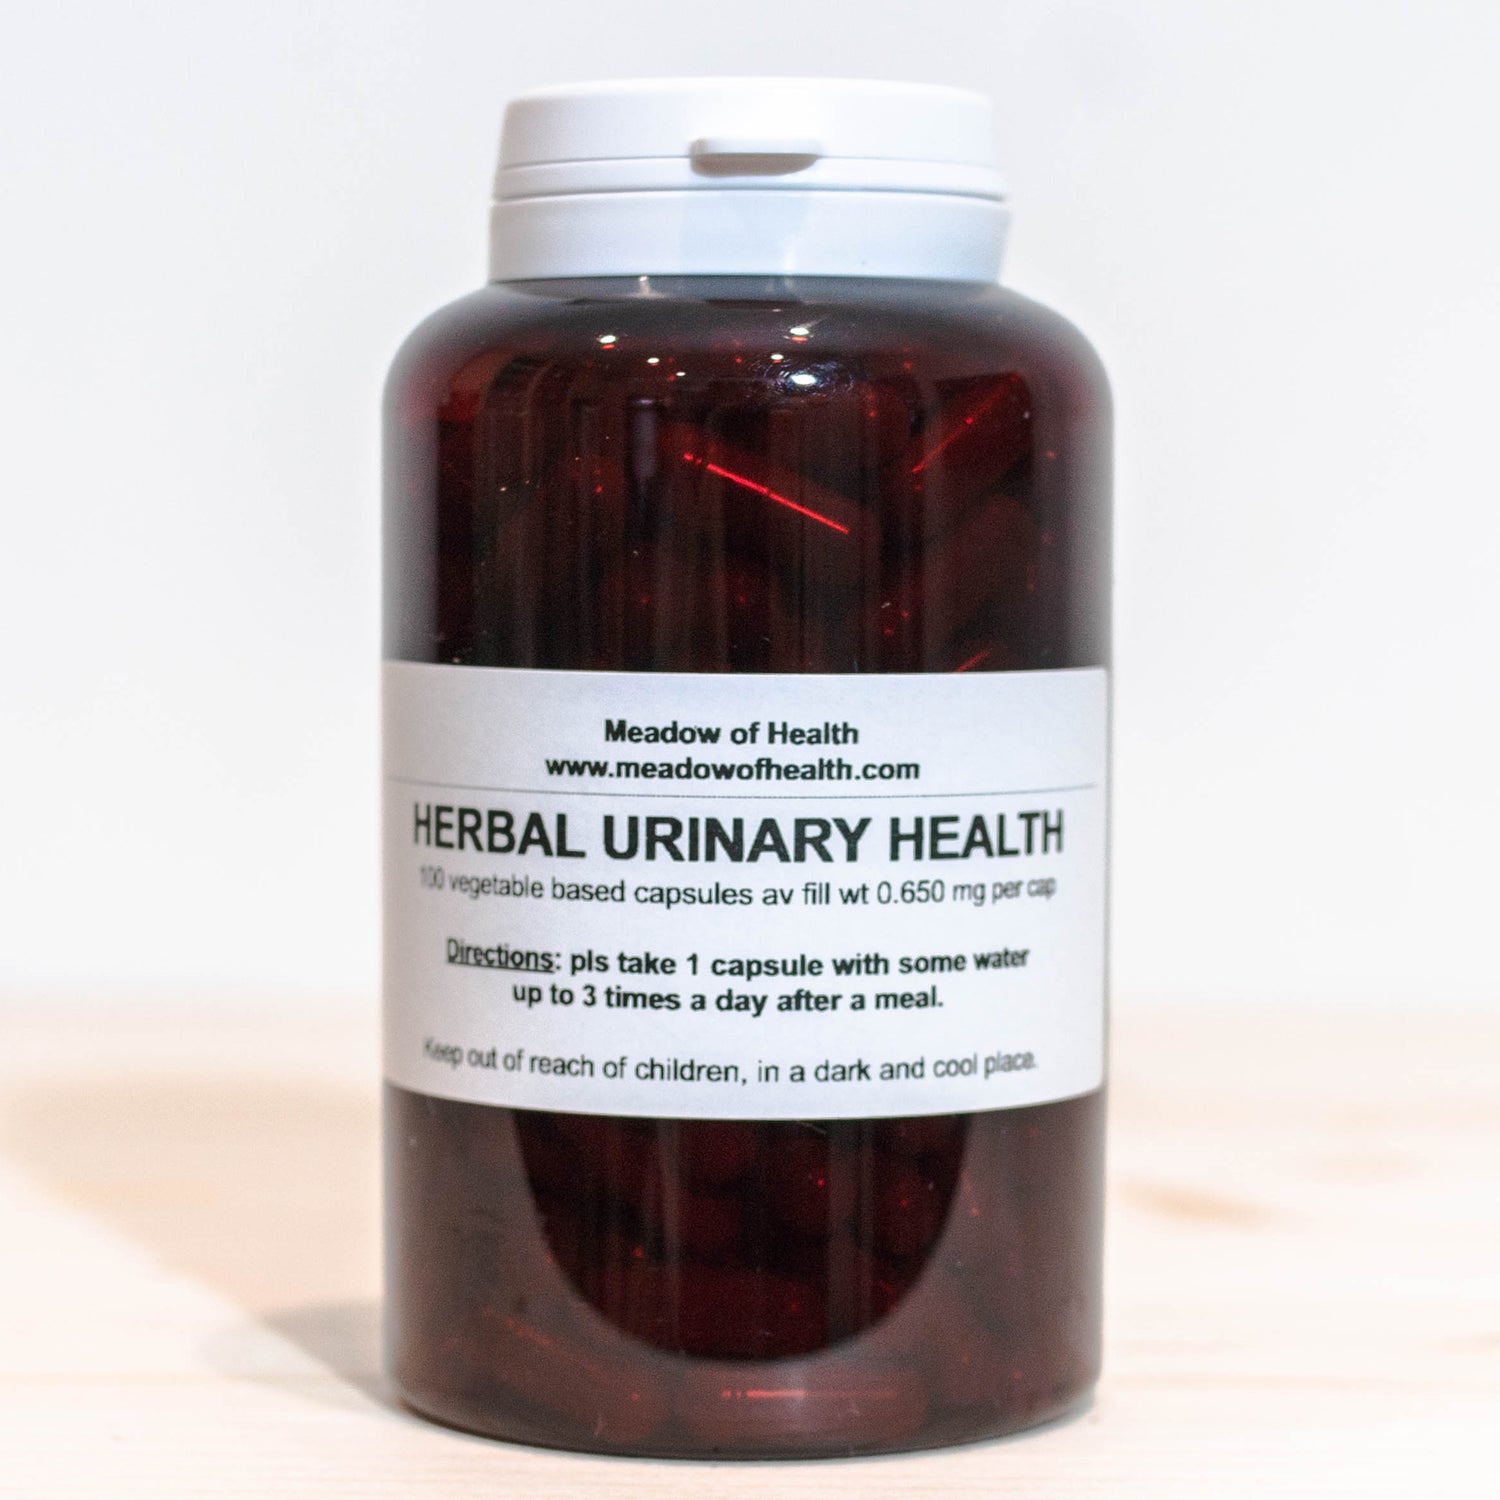 Herbal capsules